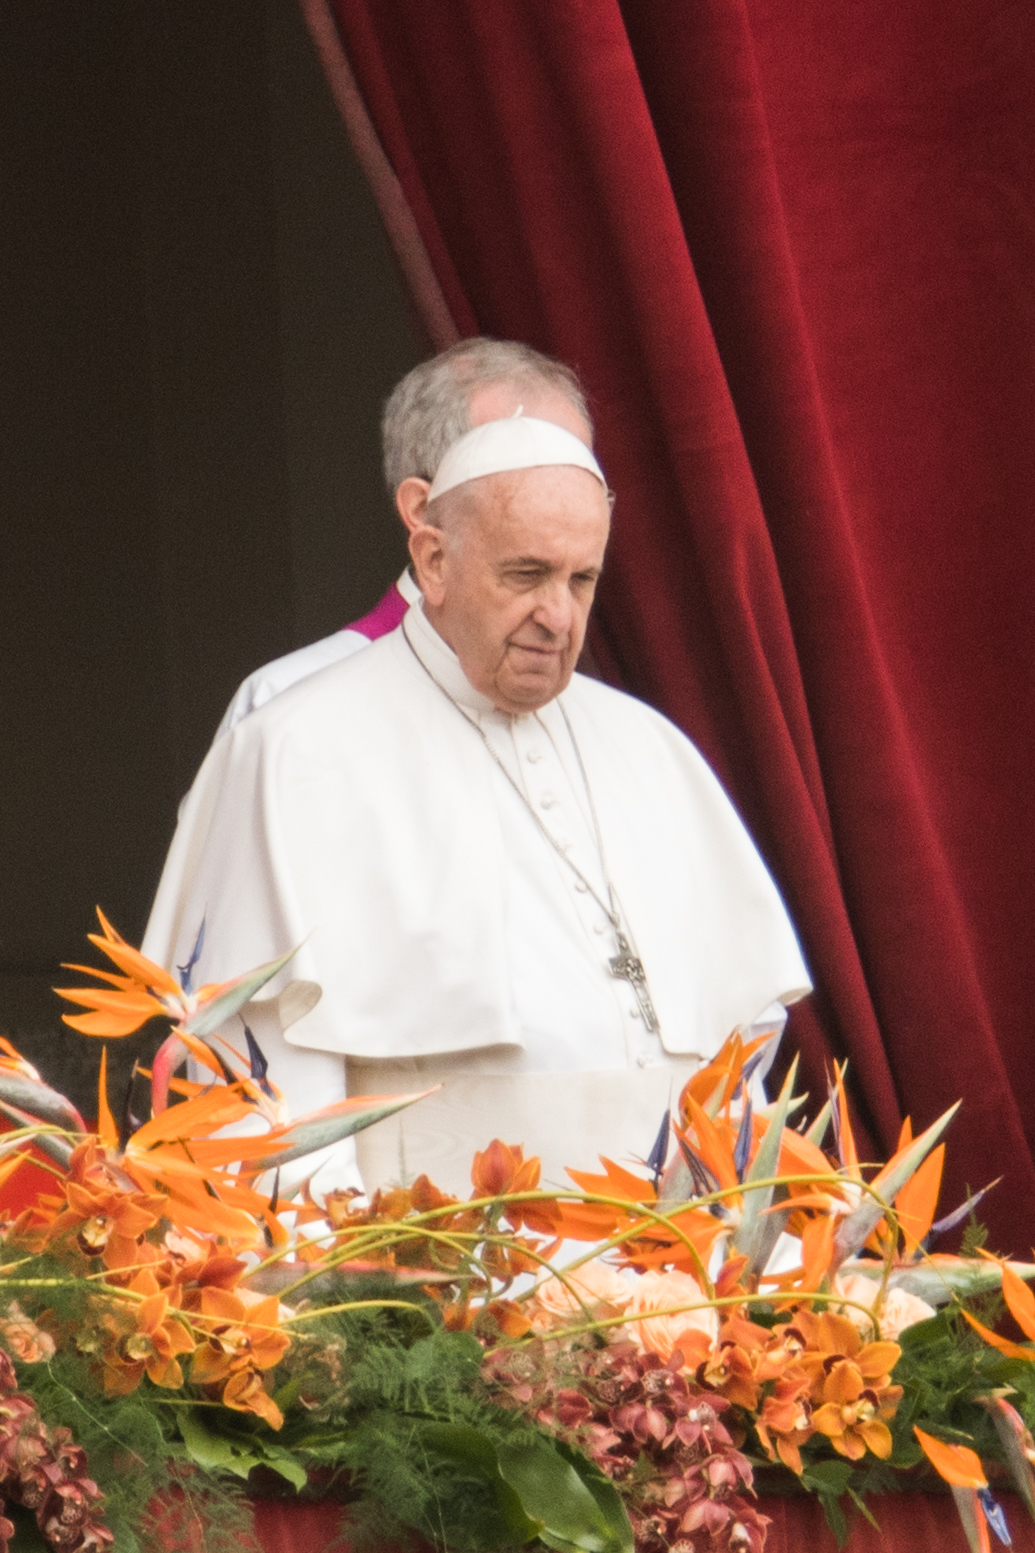 Đức Thánh Cha bày tỏ sự đau buồn với các nạn nhân của vụ đánh bom ở Sri Lanka